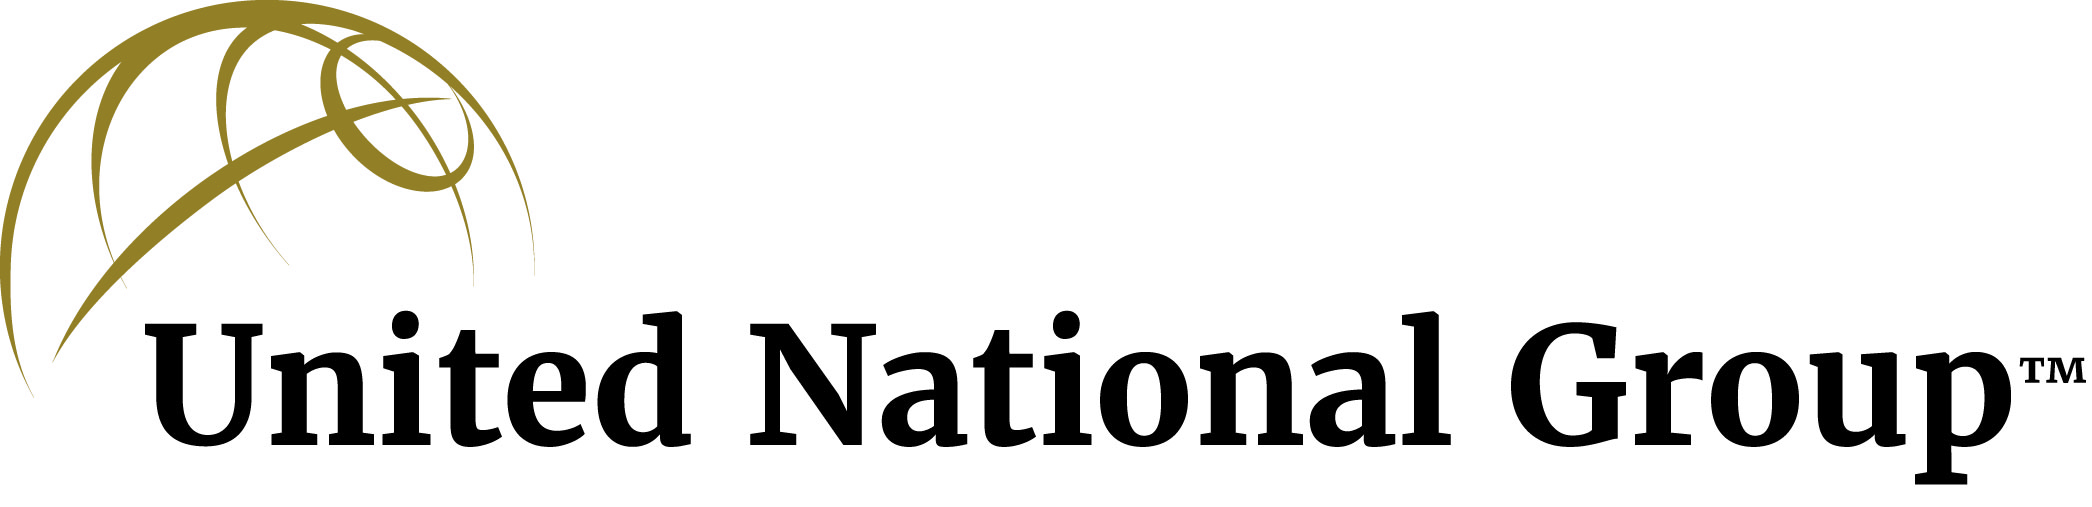 United National Group logo